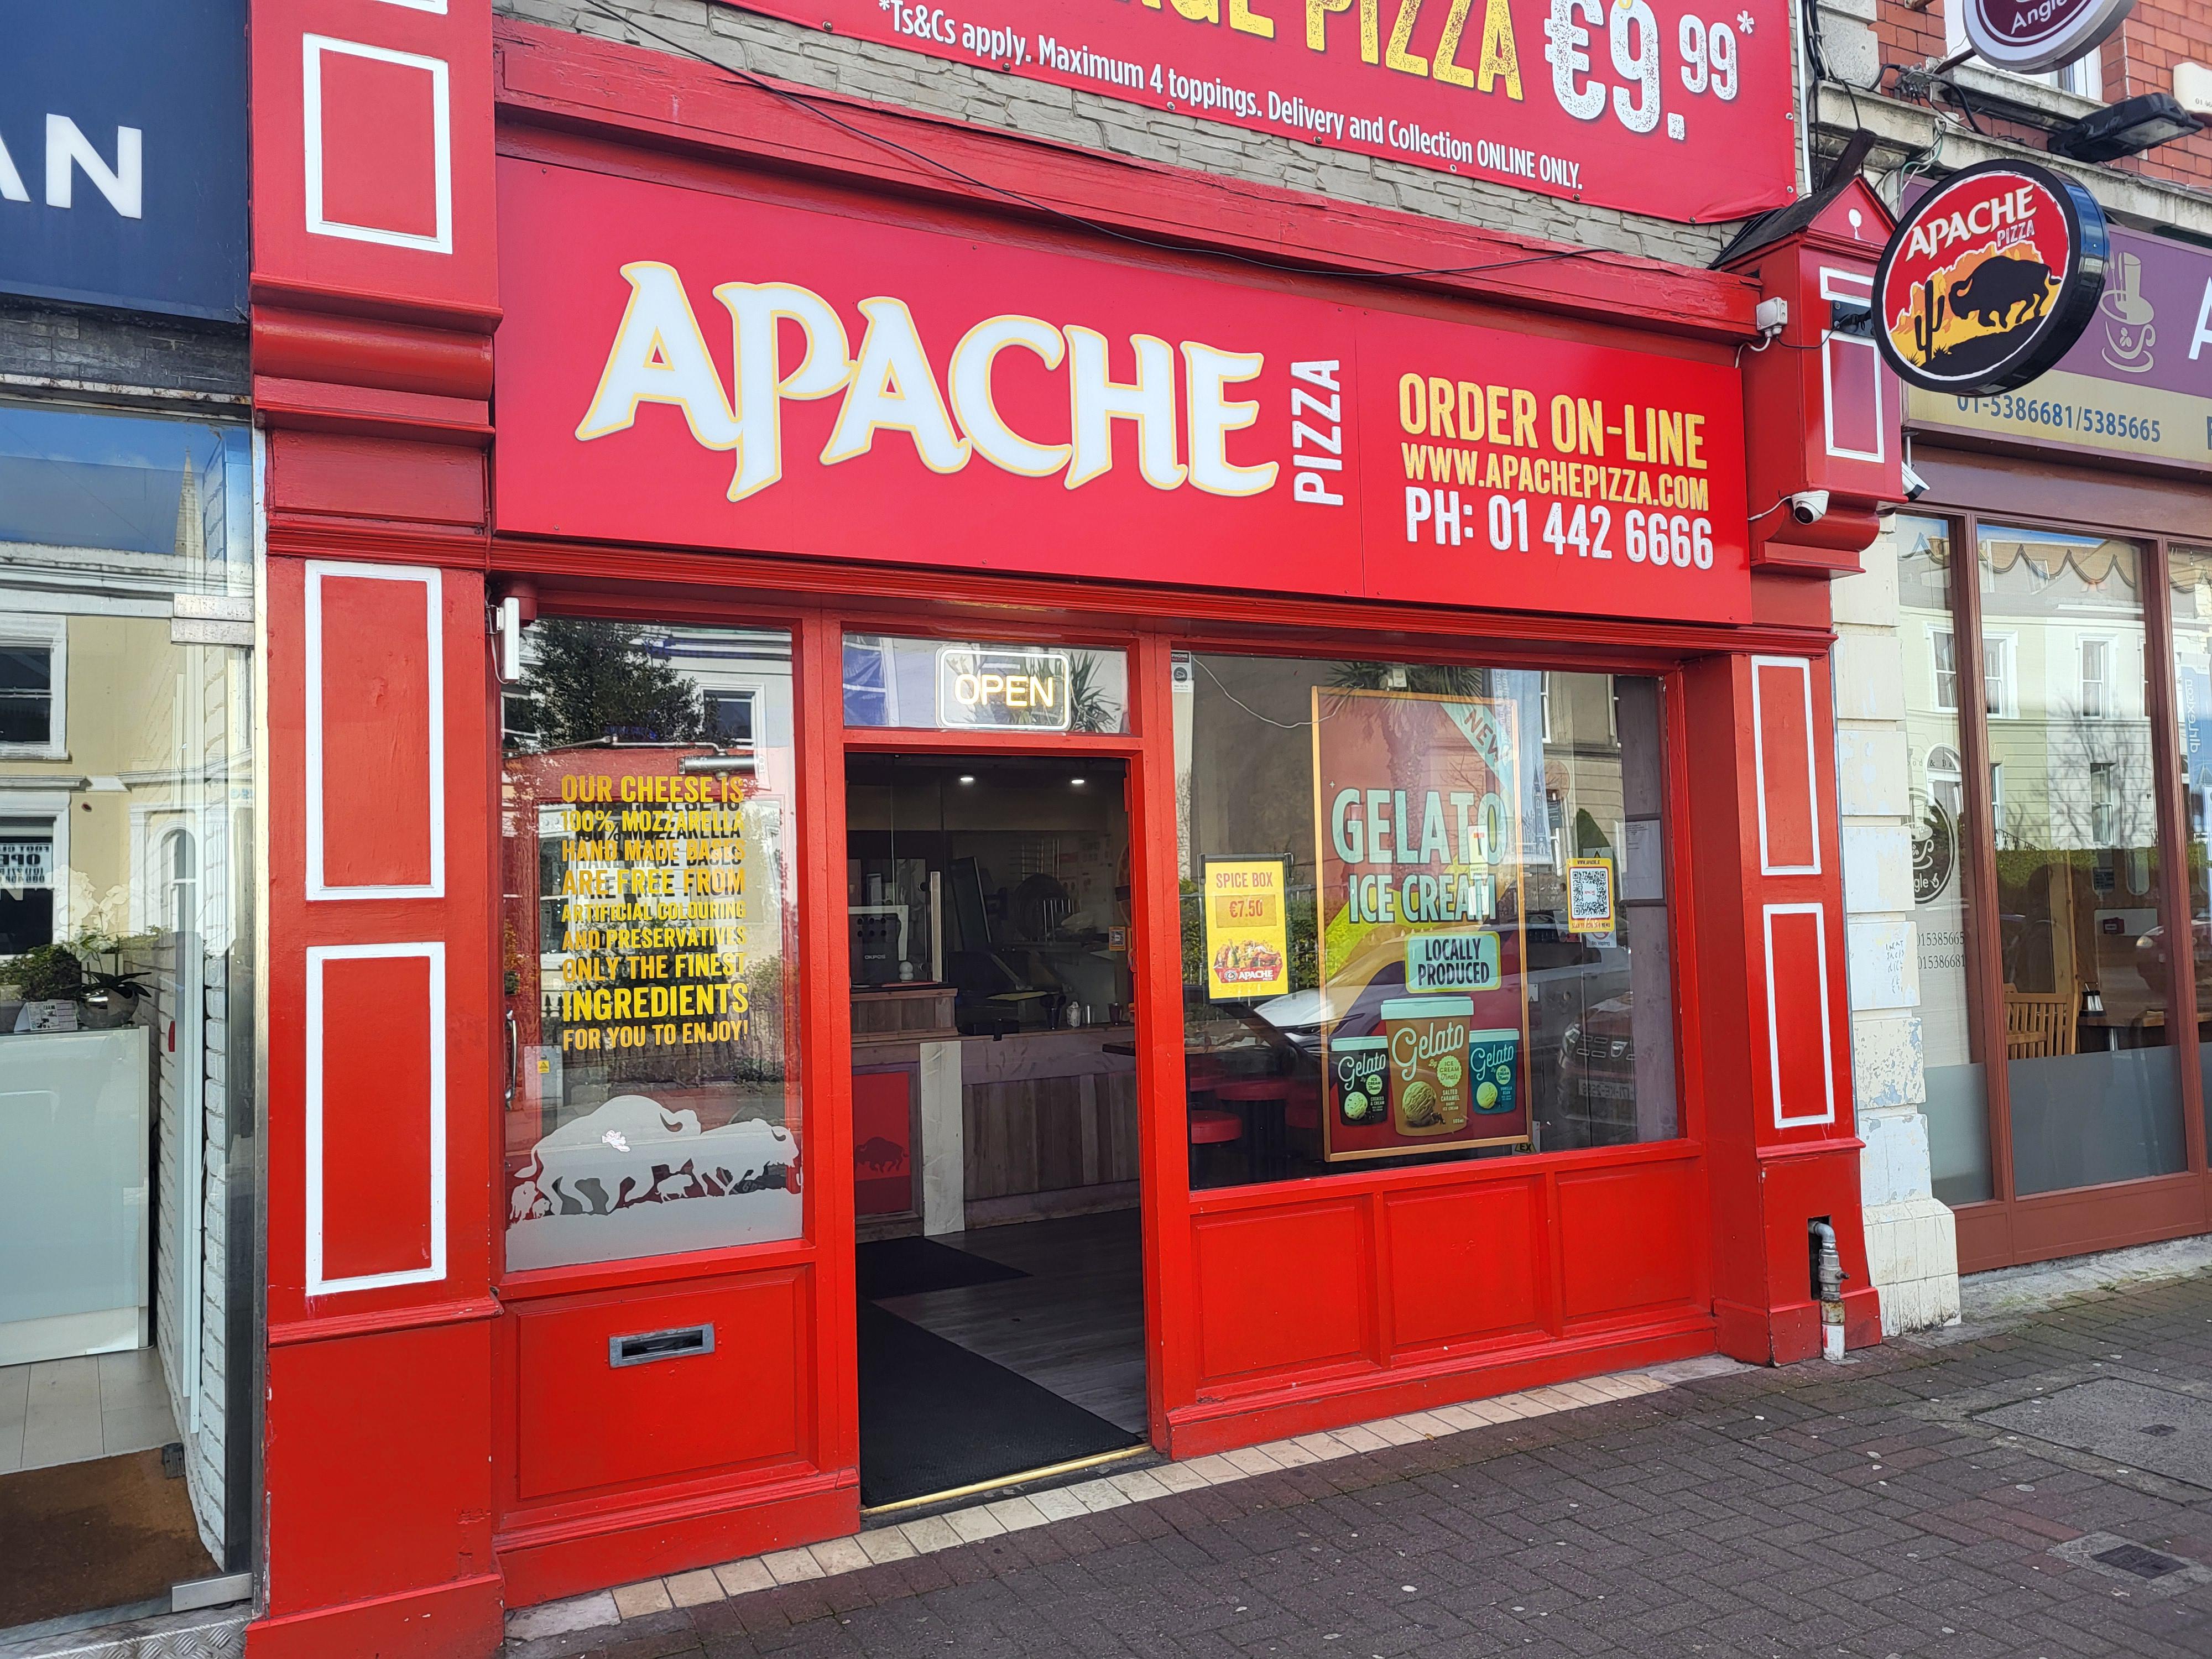 Dun Laoghaire Store front Apache Pizza Dun Laoghaire Dublin (01) 442 6666